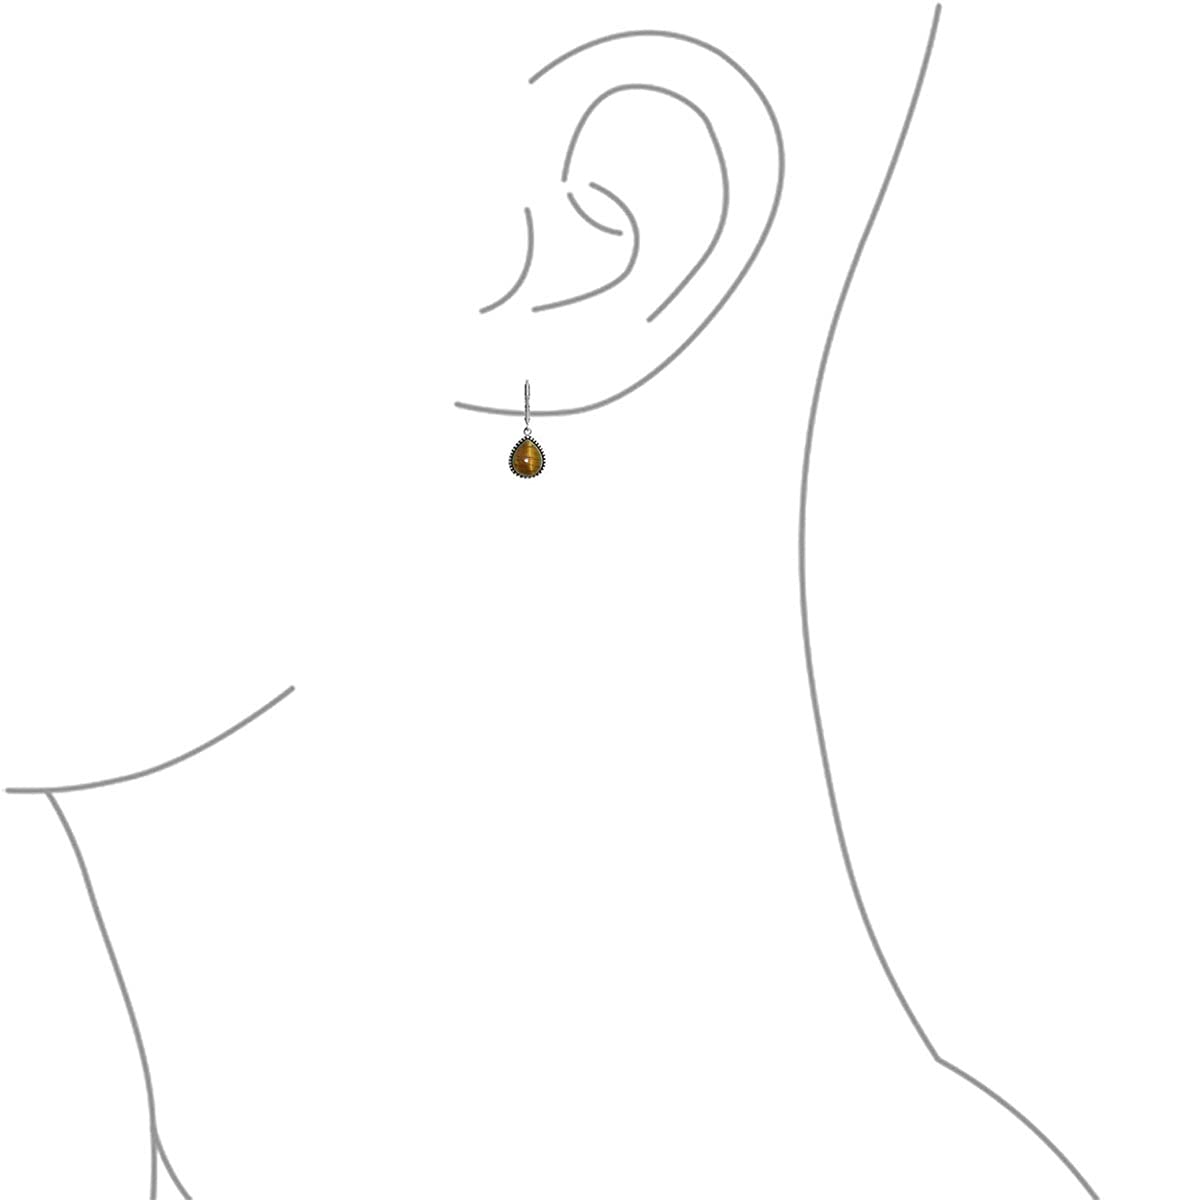 SURYAGEMS Choose Your Pear Shape Gemstone Leverback Earring 925 Sterling Silver Drop & Dangle Birthstone Earrings Chakra Healing Gift Jewelry For Women Girls